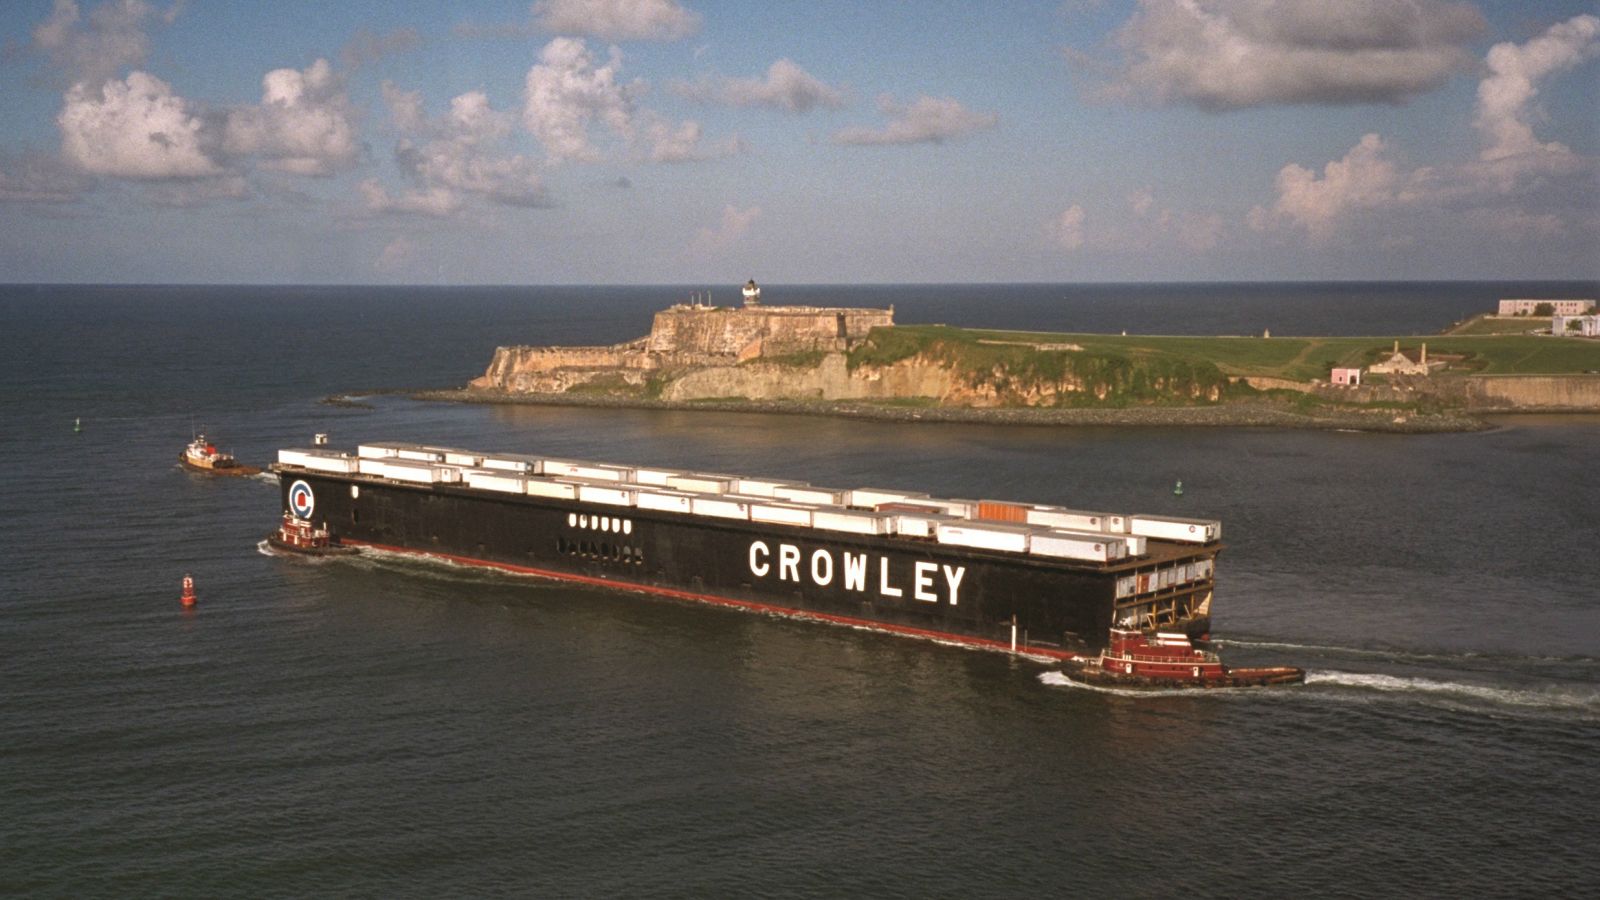 Crowley barge in Puerto Rico